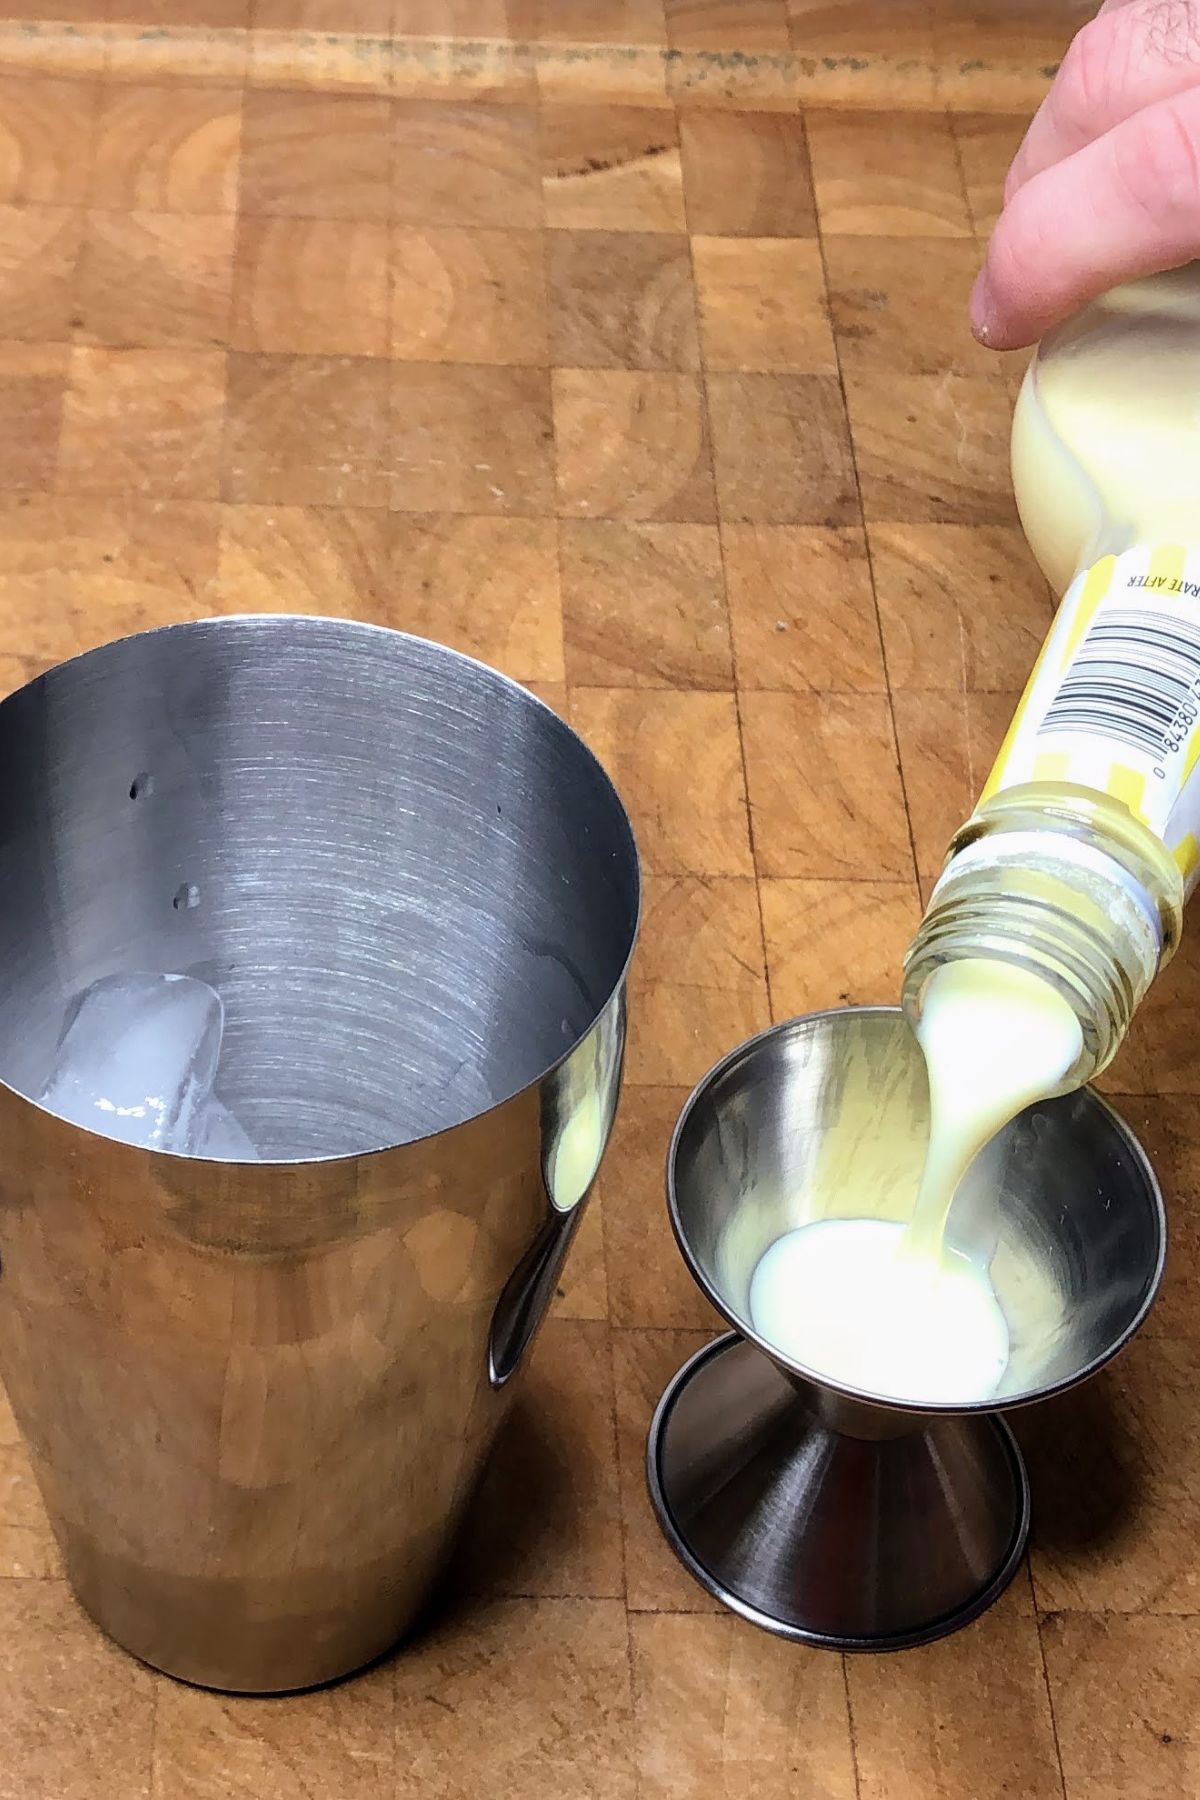 Pouring banana liquer into jigger.